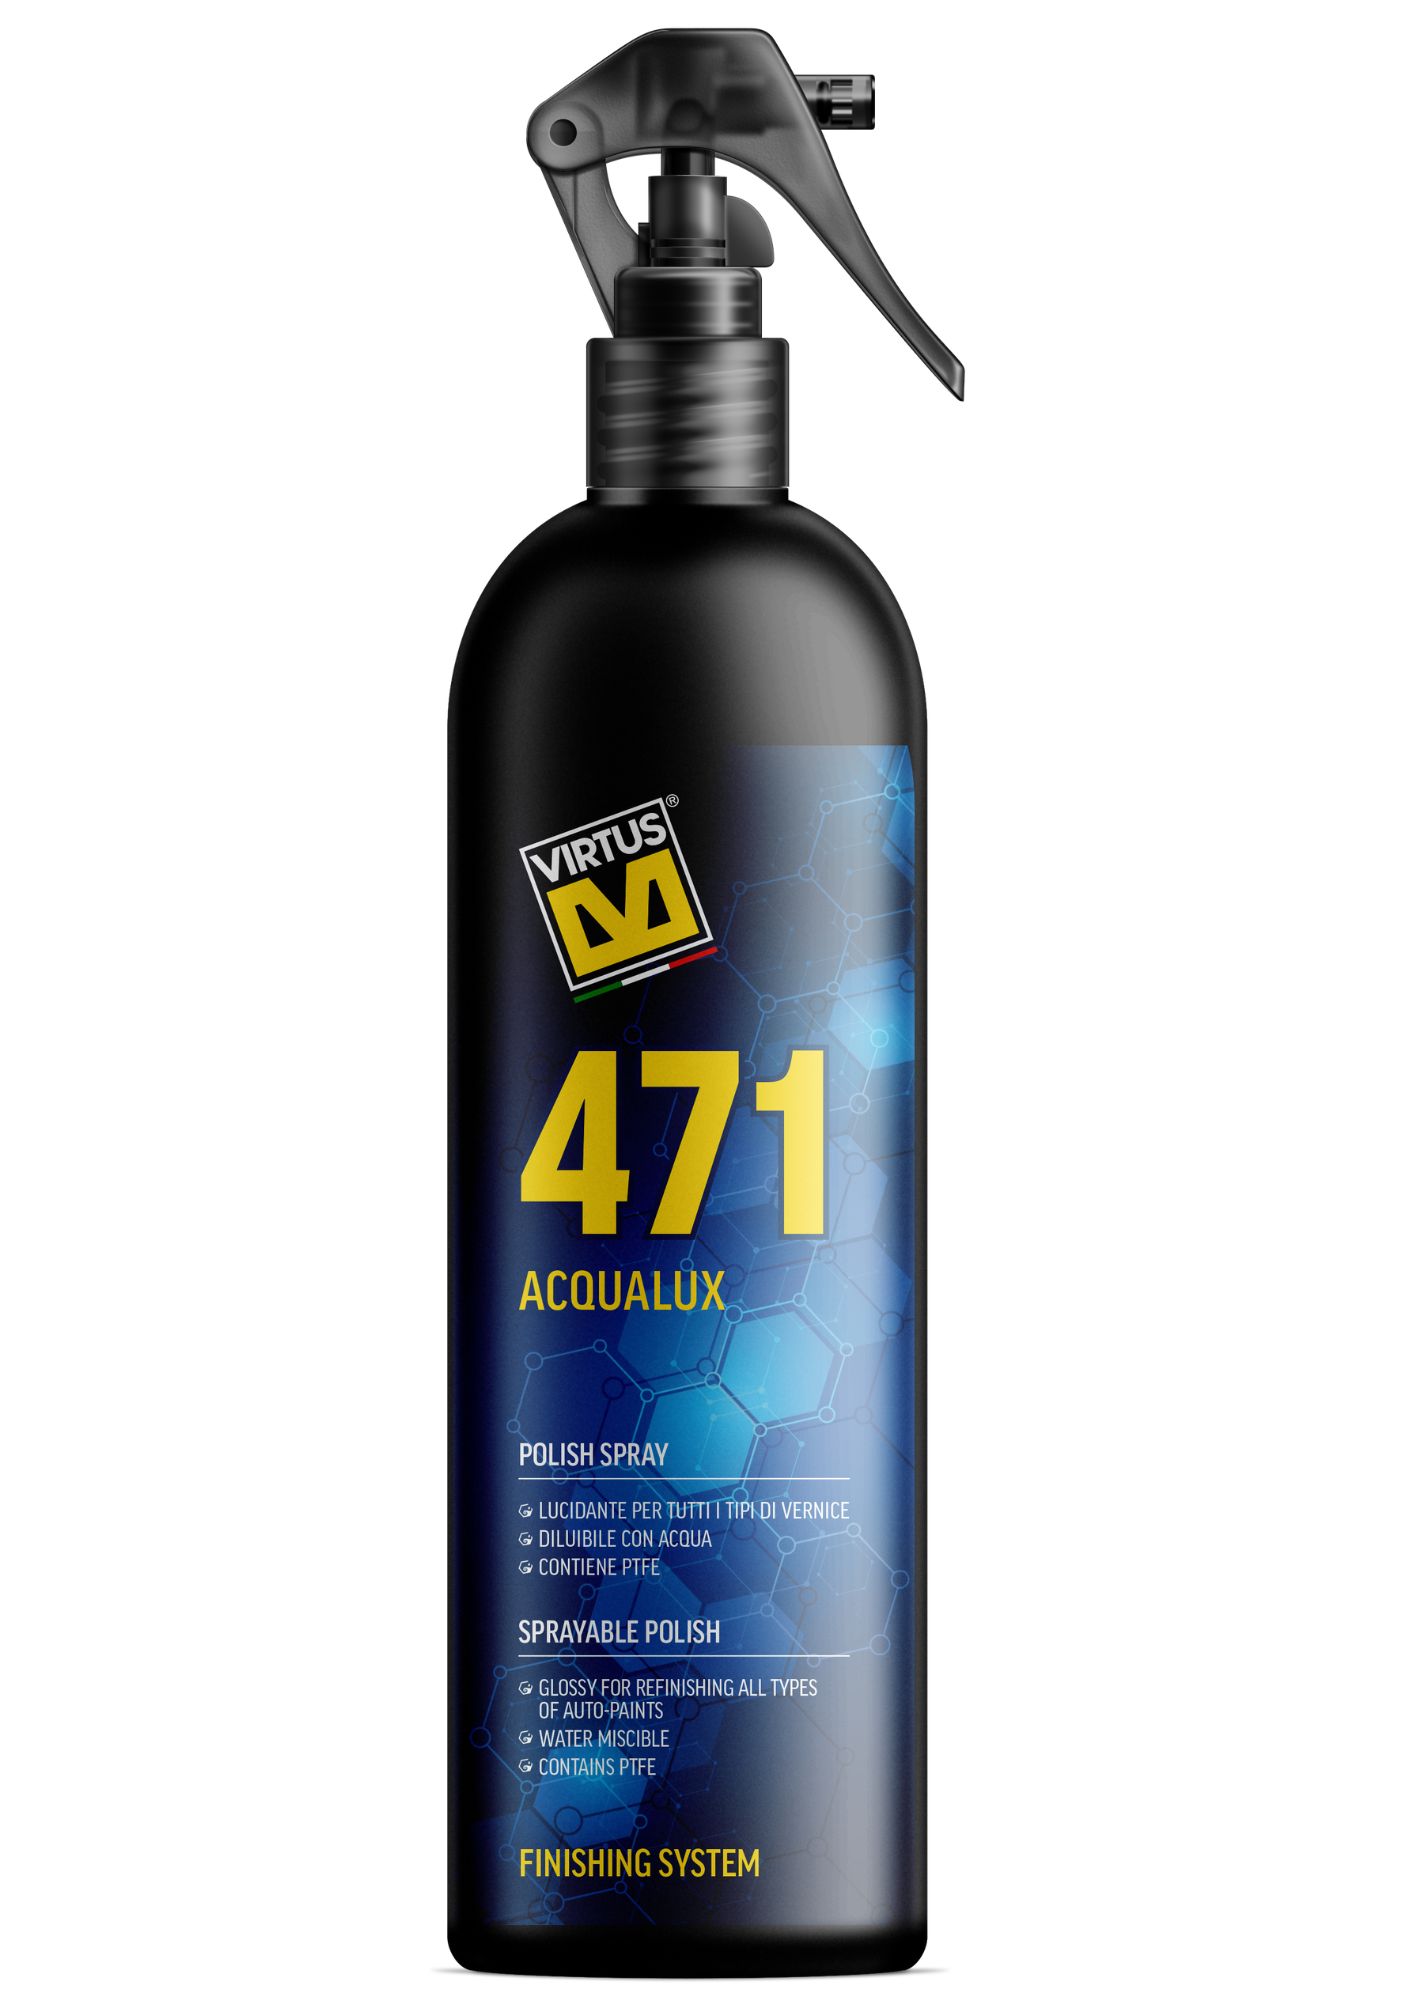 virtus 471 acqualux spray polish 500ml